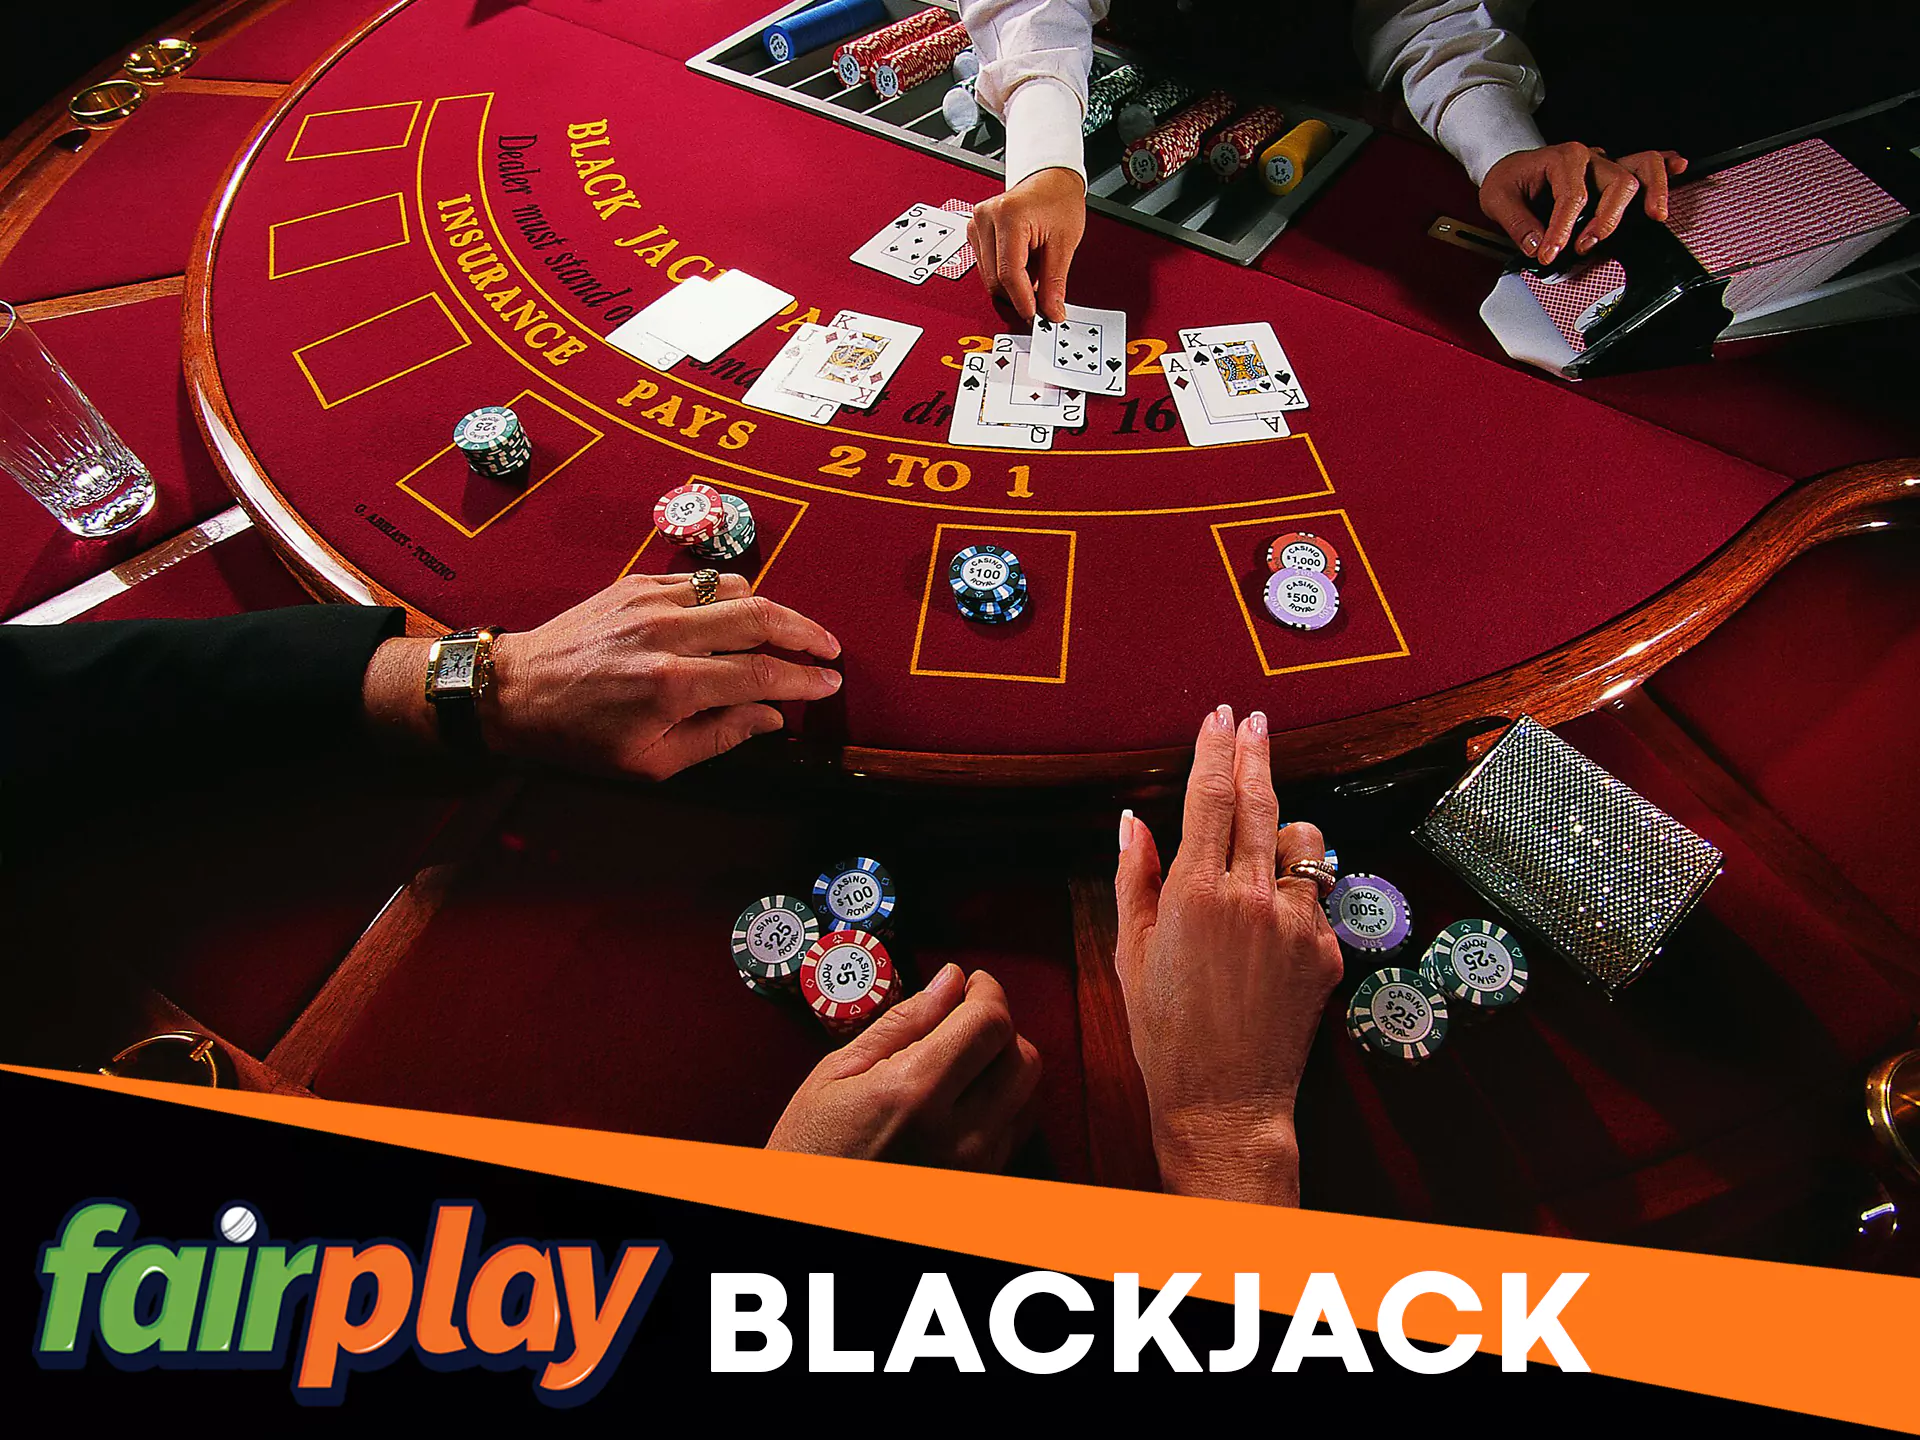 Play blackjack at Fairplay.